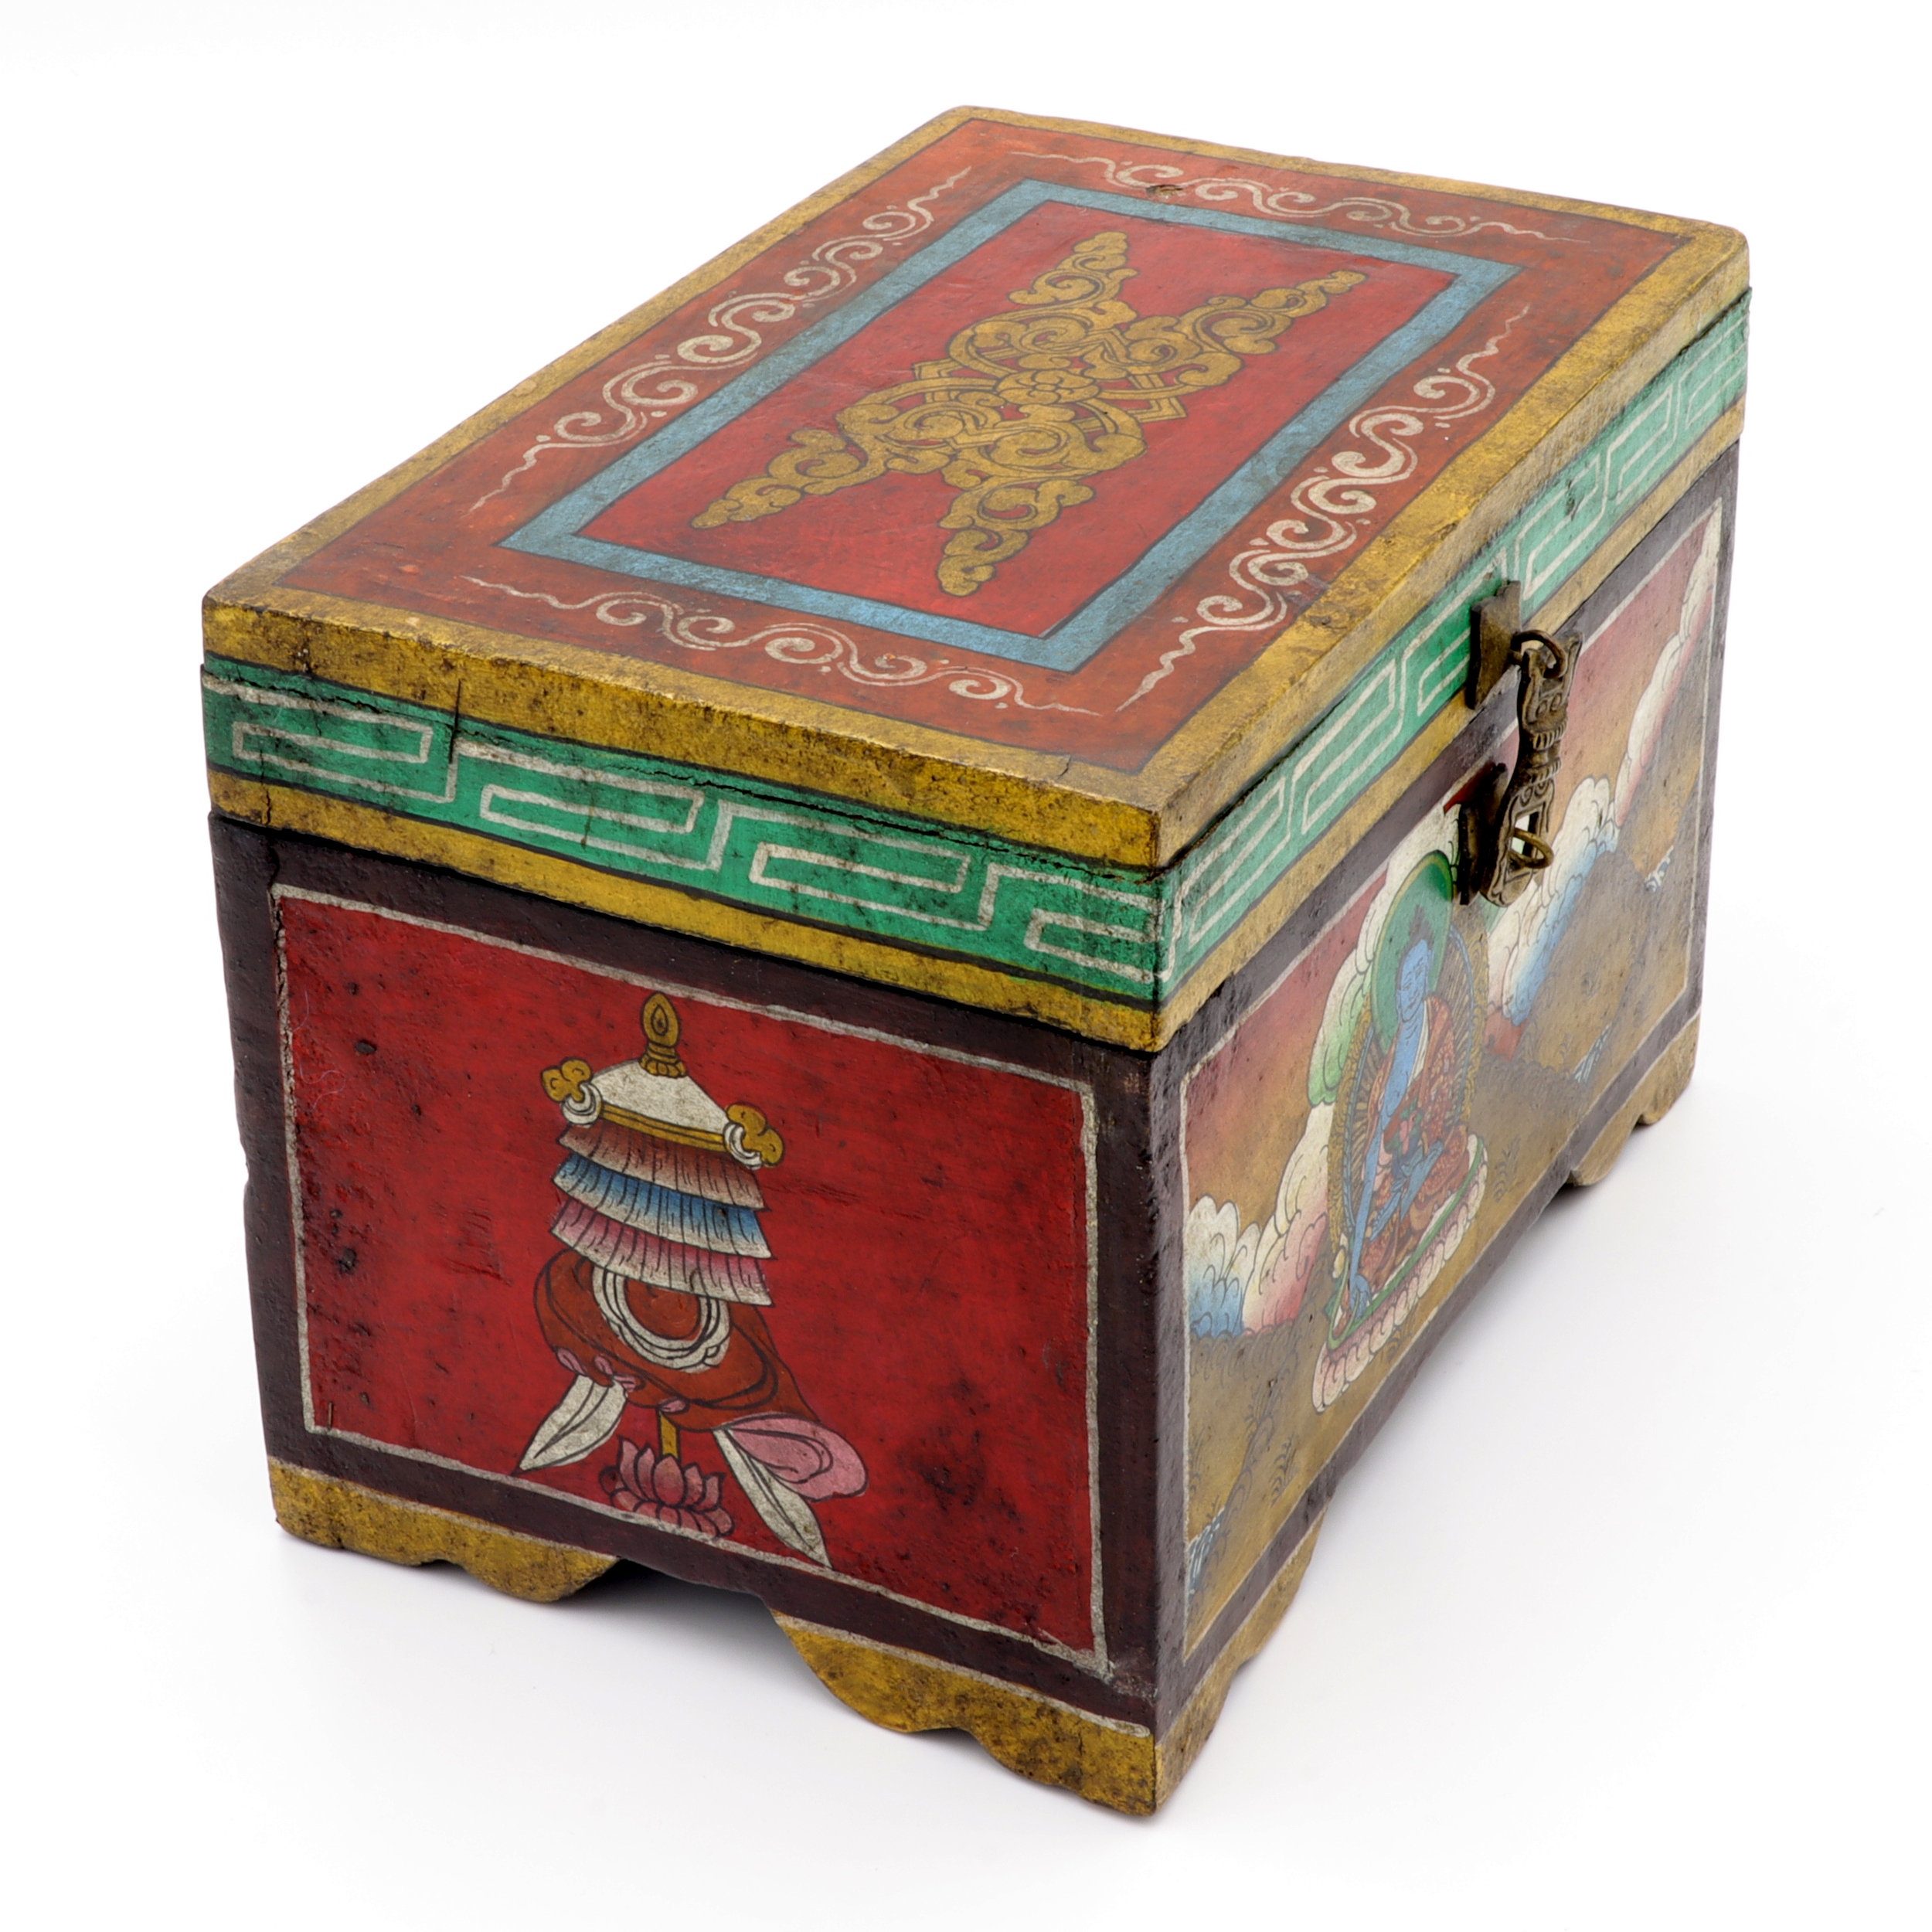 Handbemalte Kiste aus Holz - Buddha, Ashtamangala - Truhen Design - typisch nepalesiche Farben - fair gehandelt aus Nepal